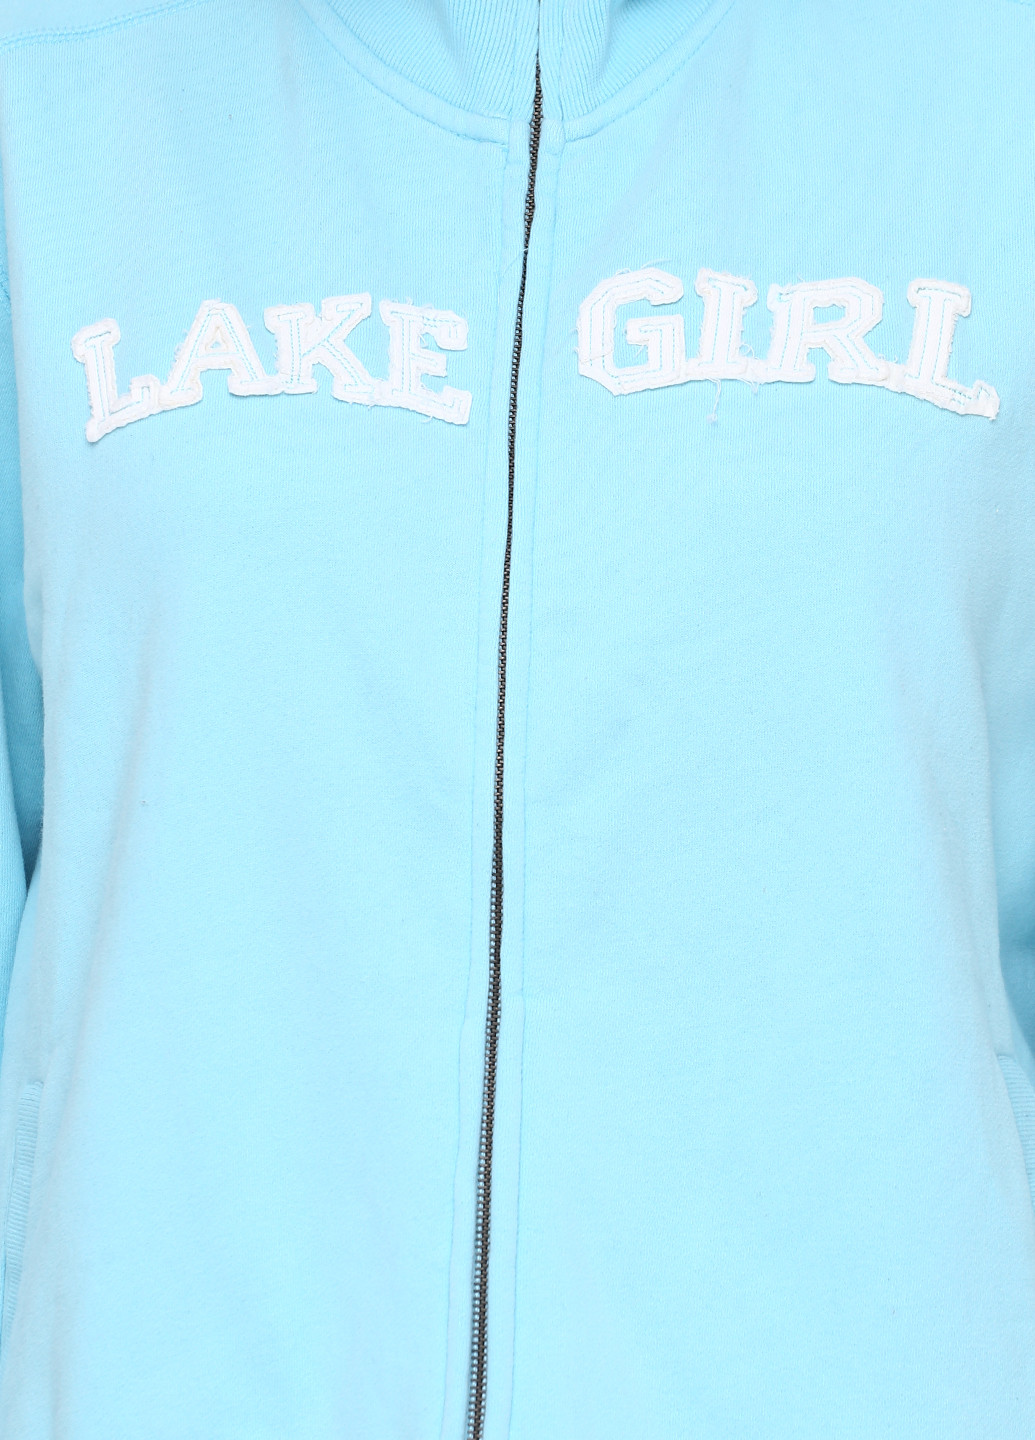 Толстовка Lakegirl надпись голубая кэжуал трикотаж, хлопок